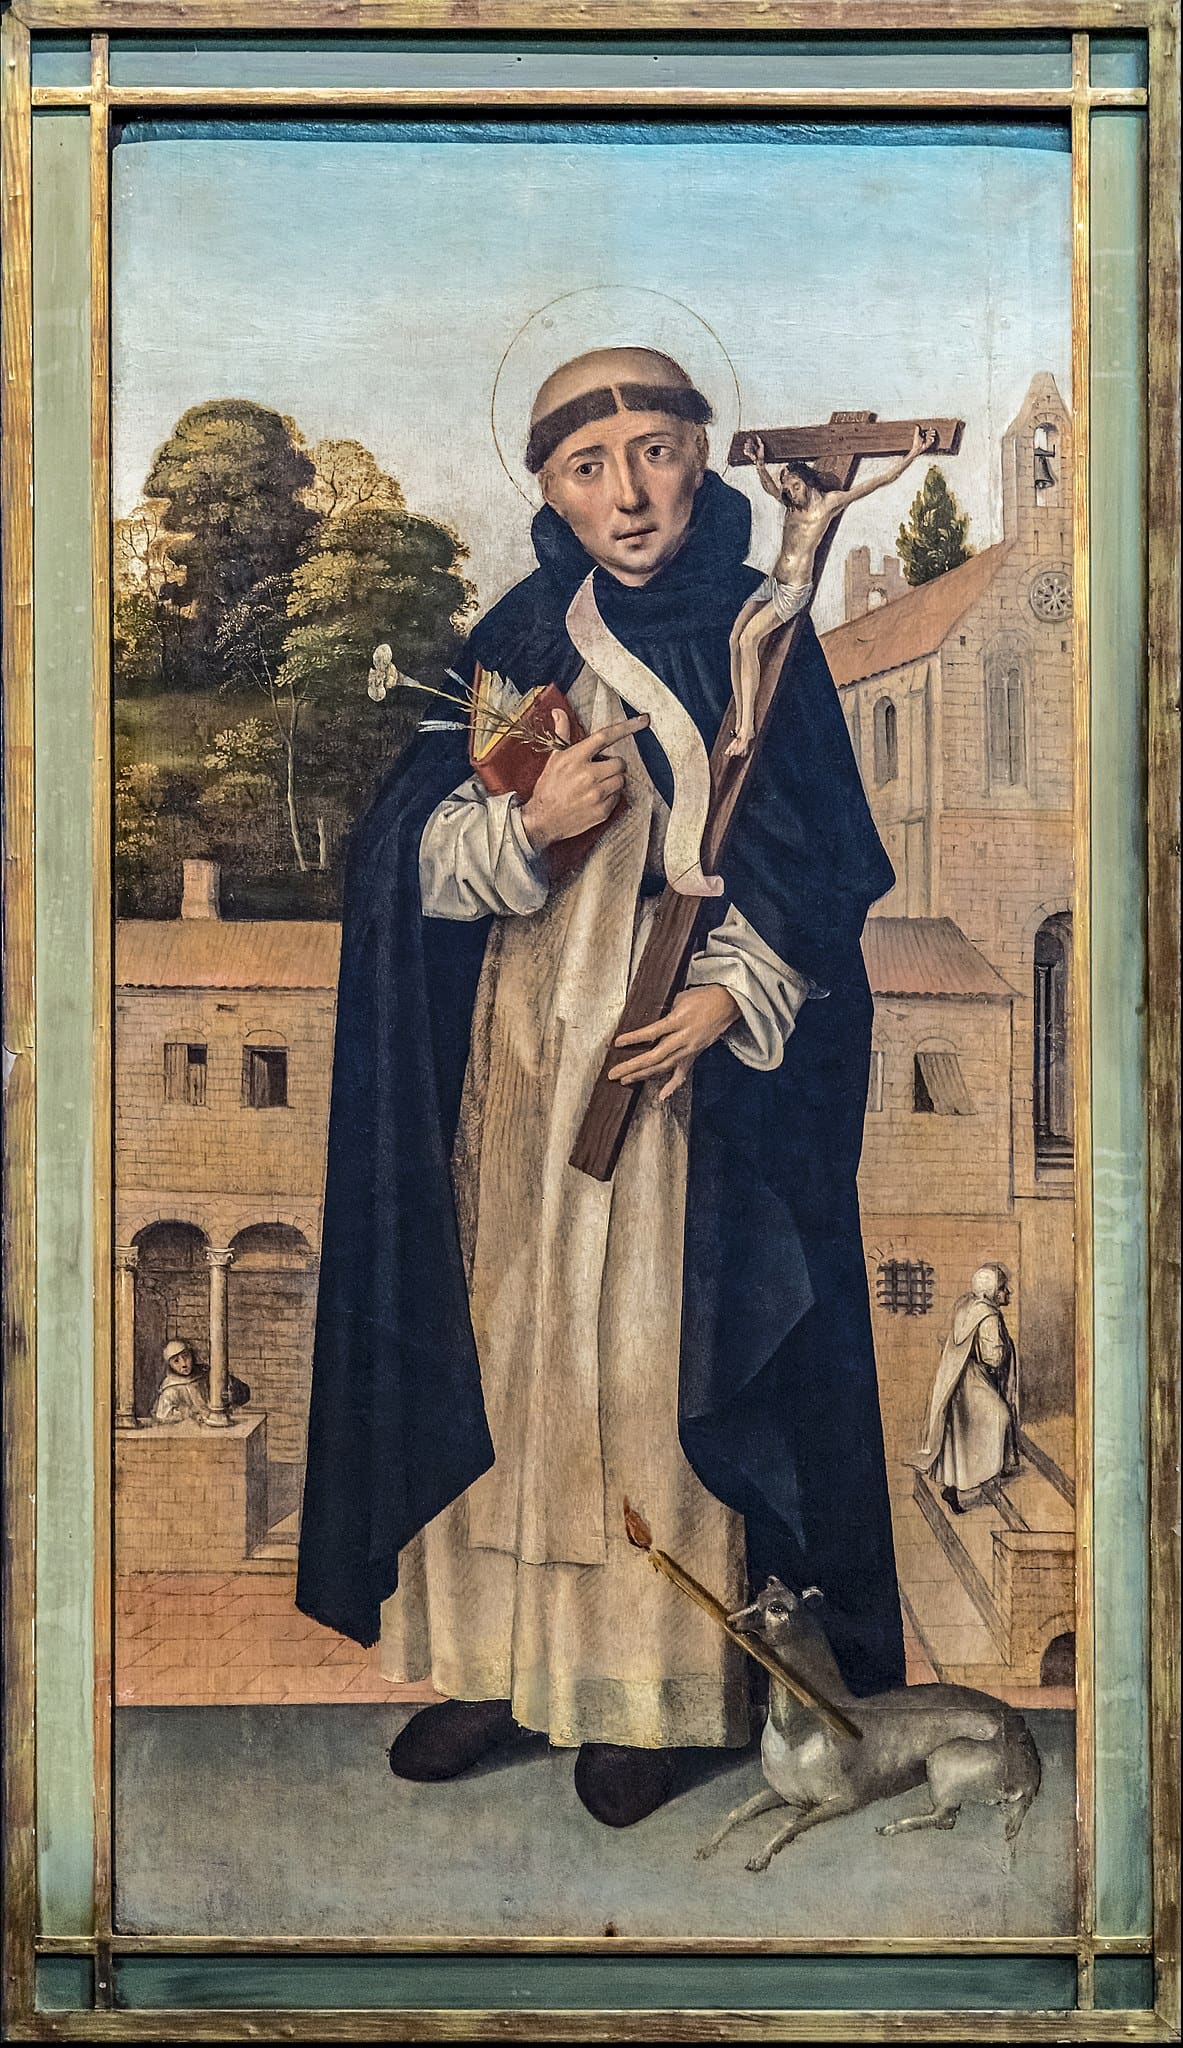 Portrait des Hl. Dominikus, mit Kruzifix und Hund mit Fackel – ein Verweis auf die Scheiterhaufen der Inquisition